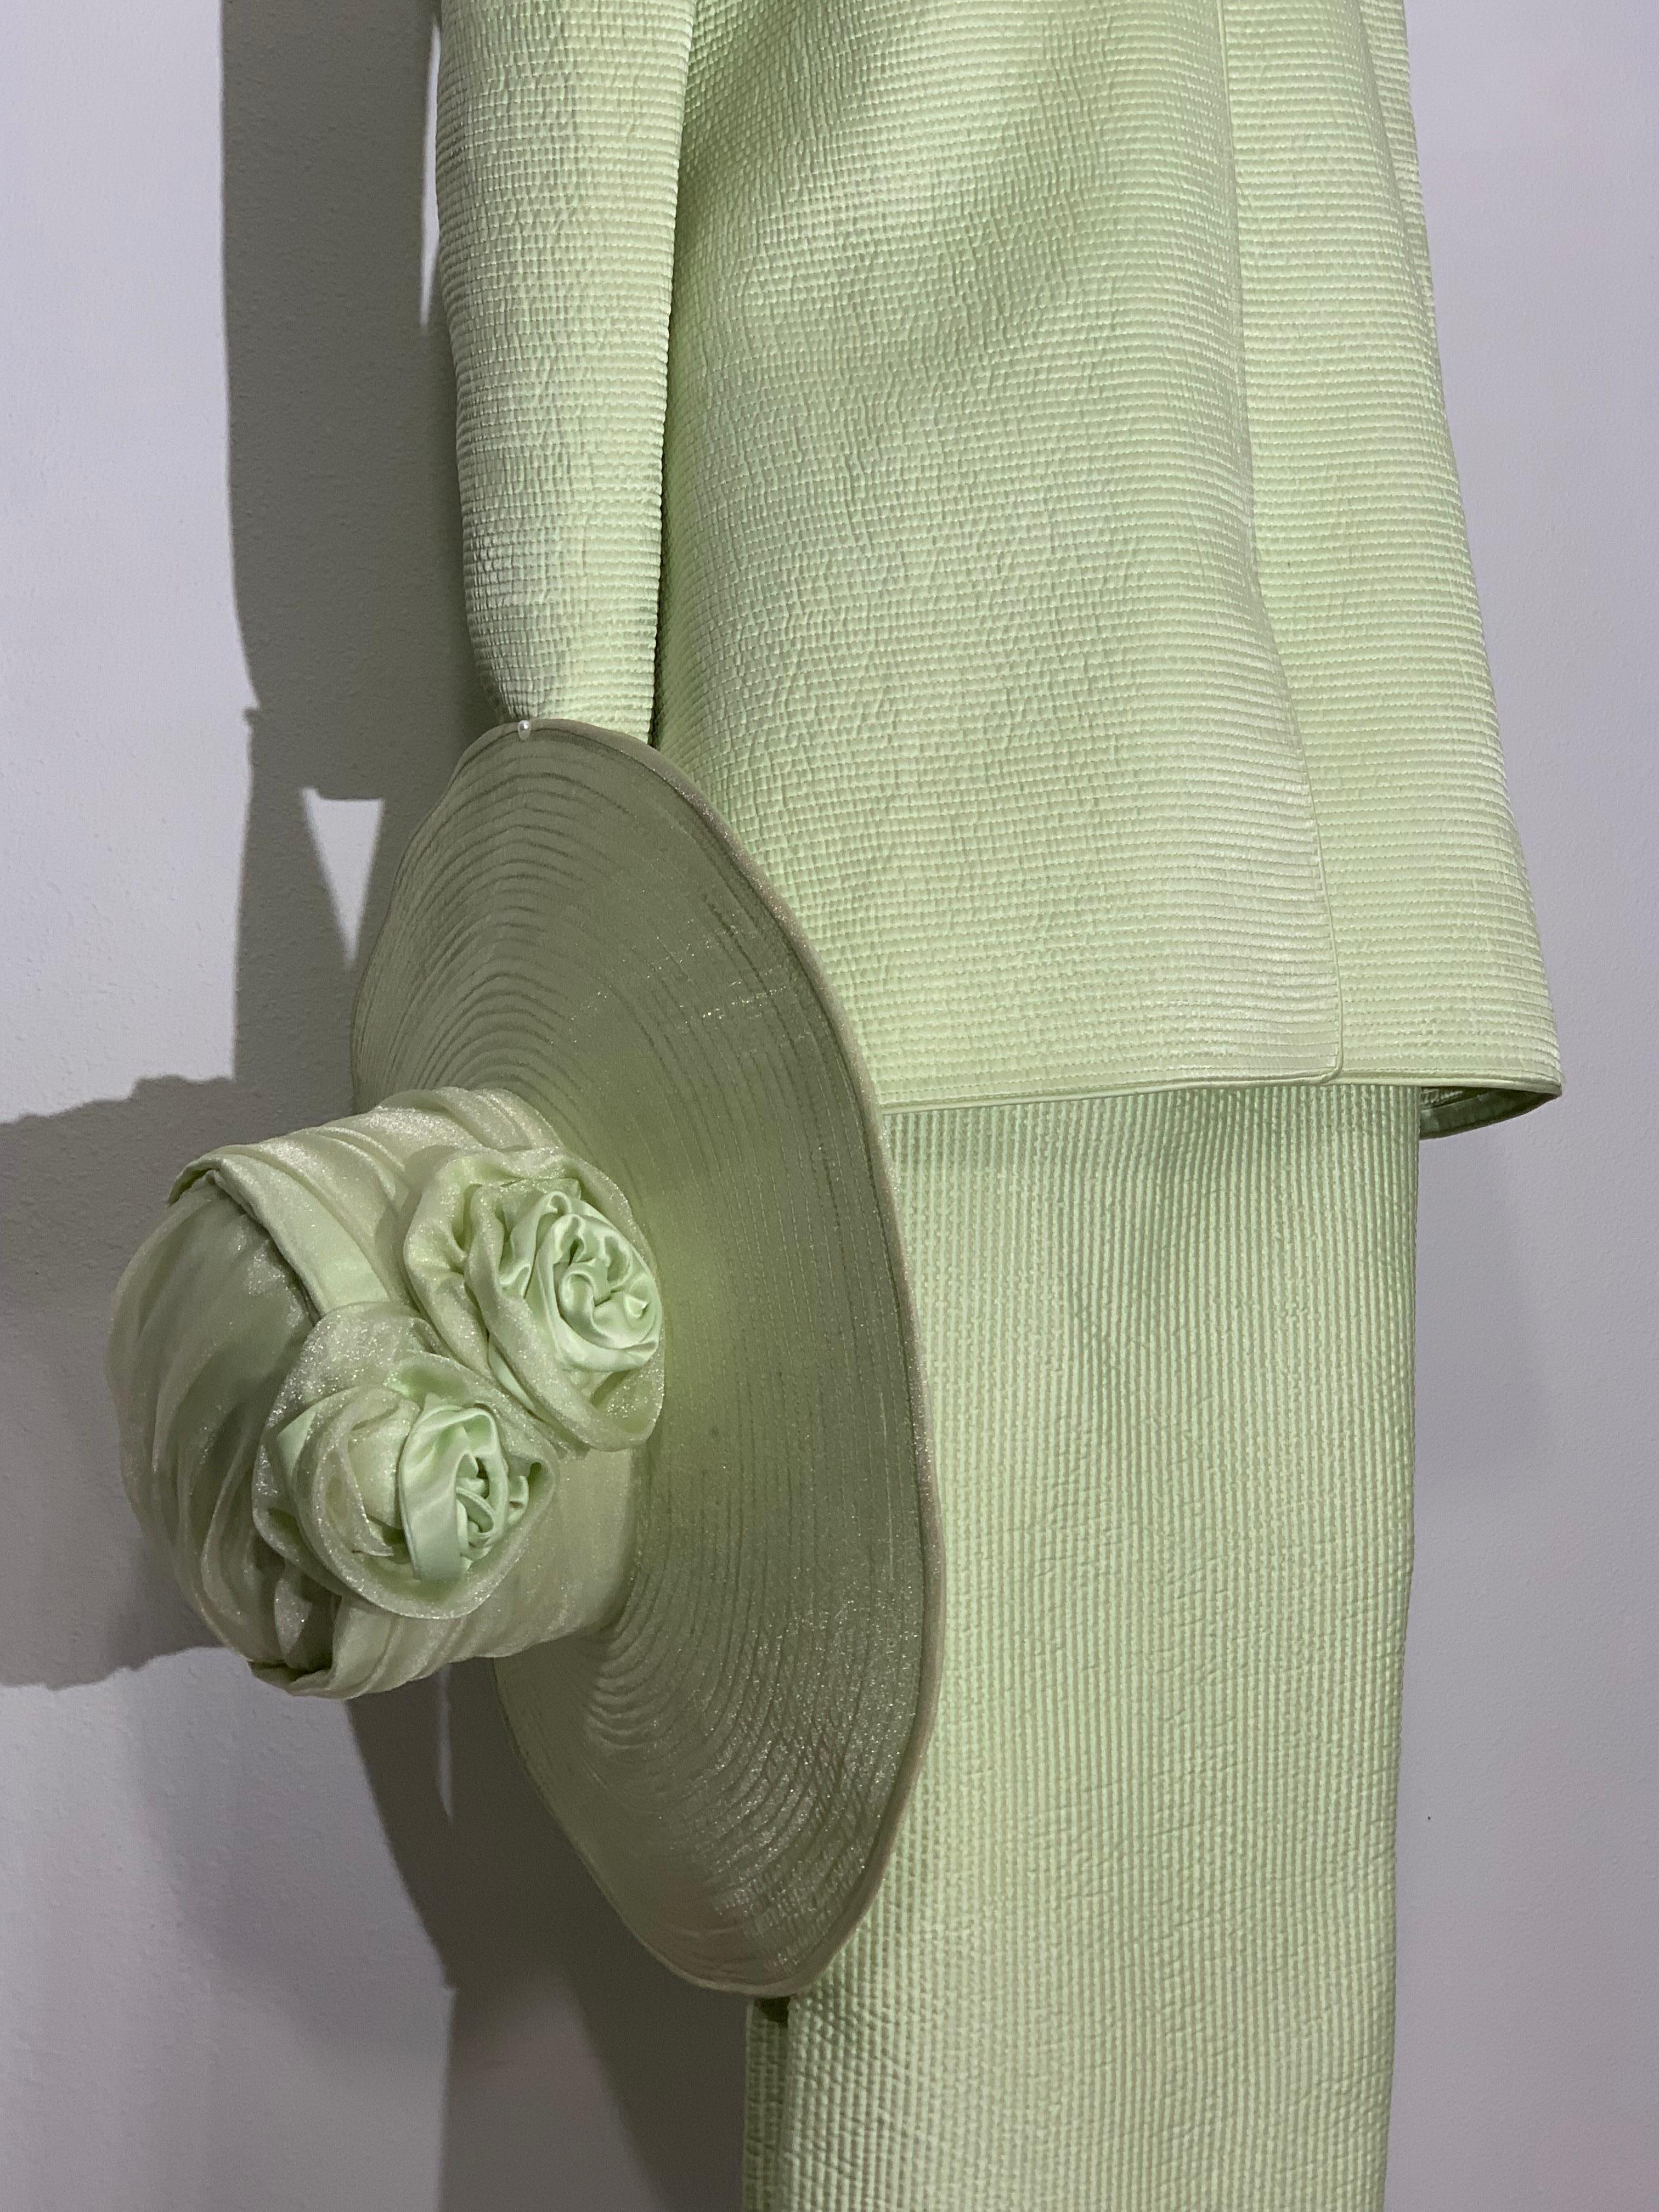 3 pièces Couture Quality Celadon Green Silk Quilted Pantsuit with Stovepipe Leg, Tunic Jacket and Coordinating Hat : Le costume est non doublé, de poids printanier, avec une veste tunique légèrement évasée et à col haut. Fermetures à